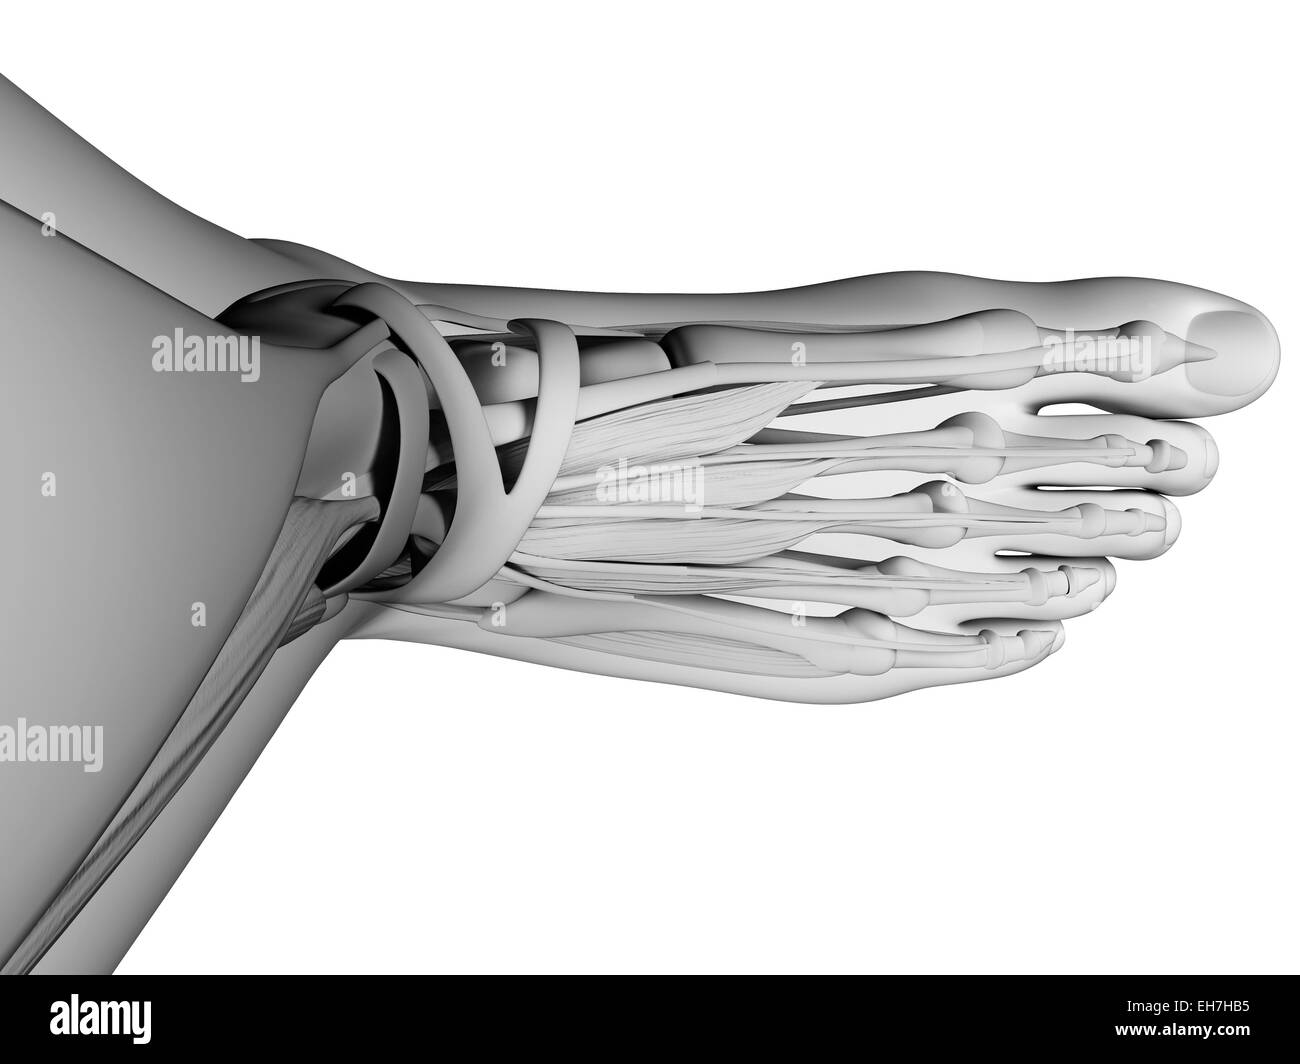 Human foot anatomy, illustration Stock Photo